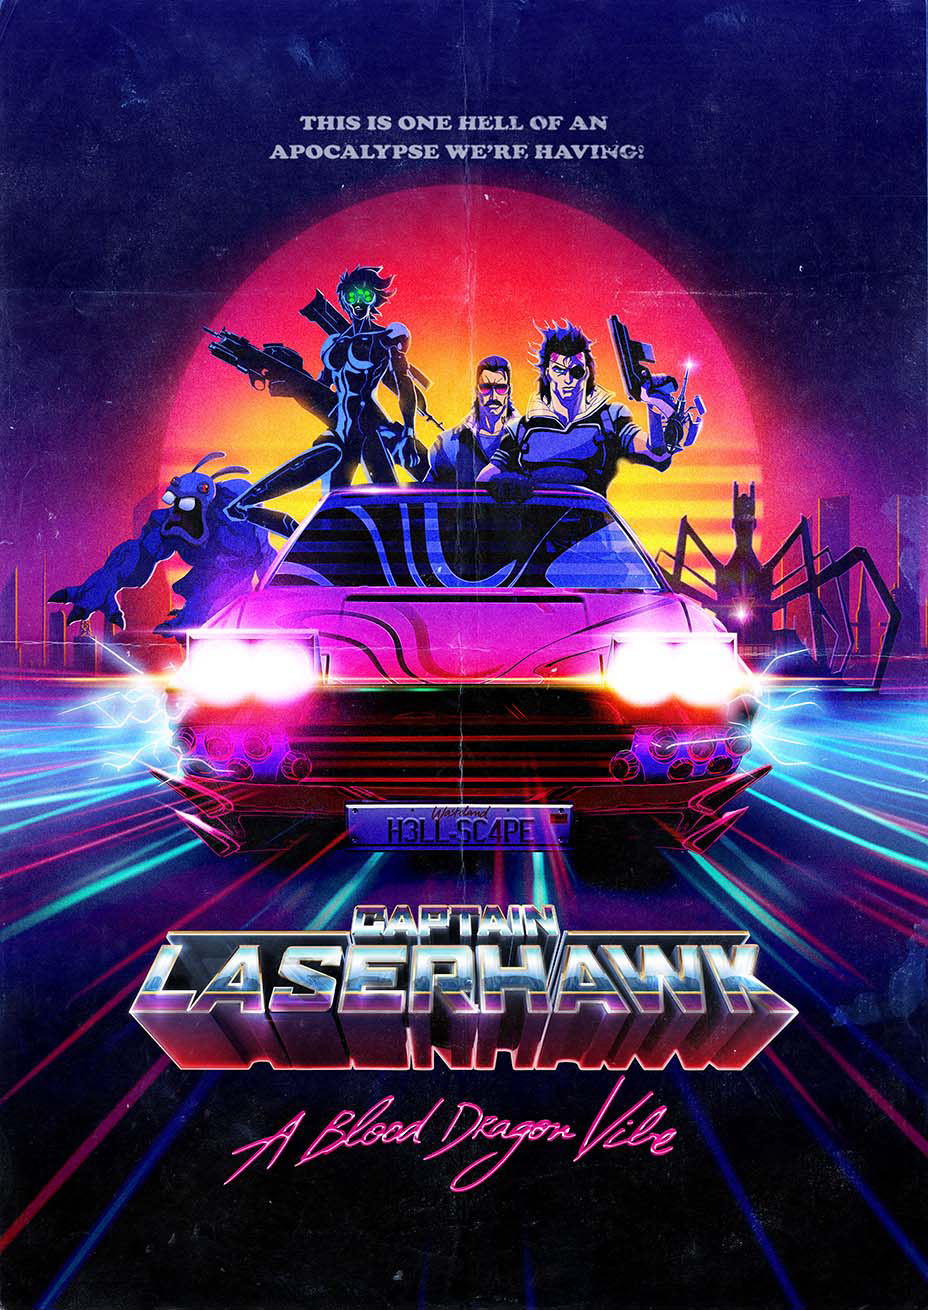 Poster Phim Đội trưởng Laserhawk: Blood Dragon Remix (Captain Laserhawk: A Blood Dragon Remix)